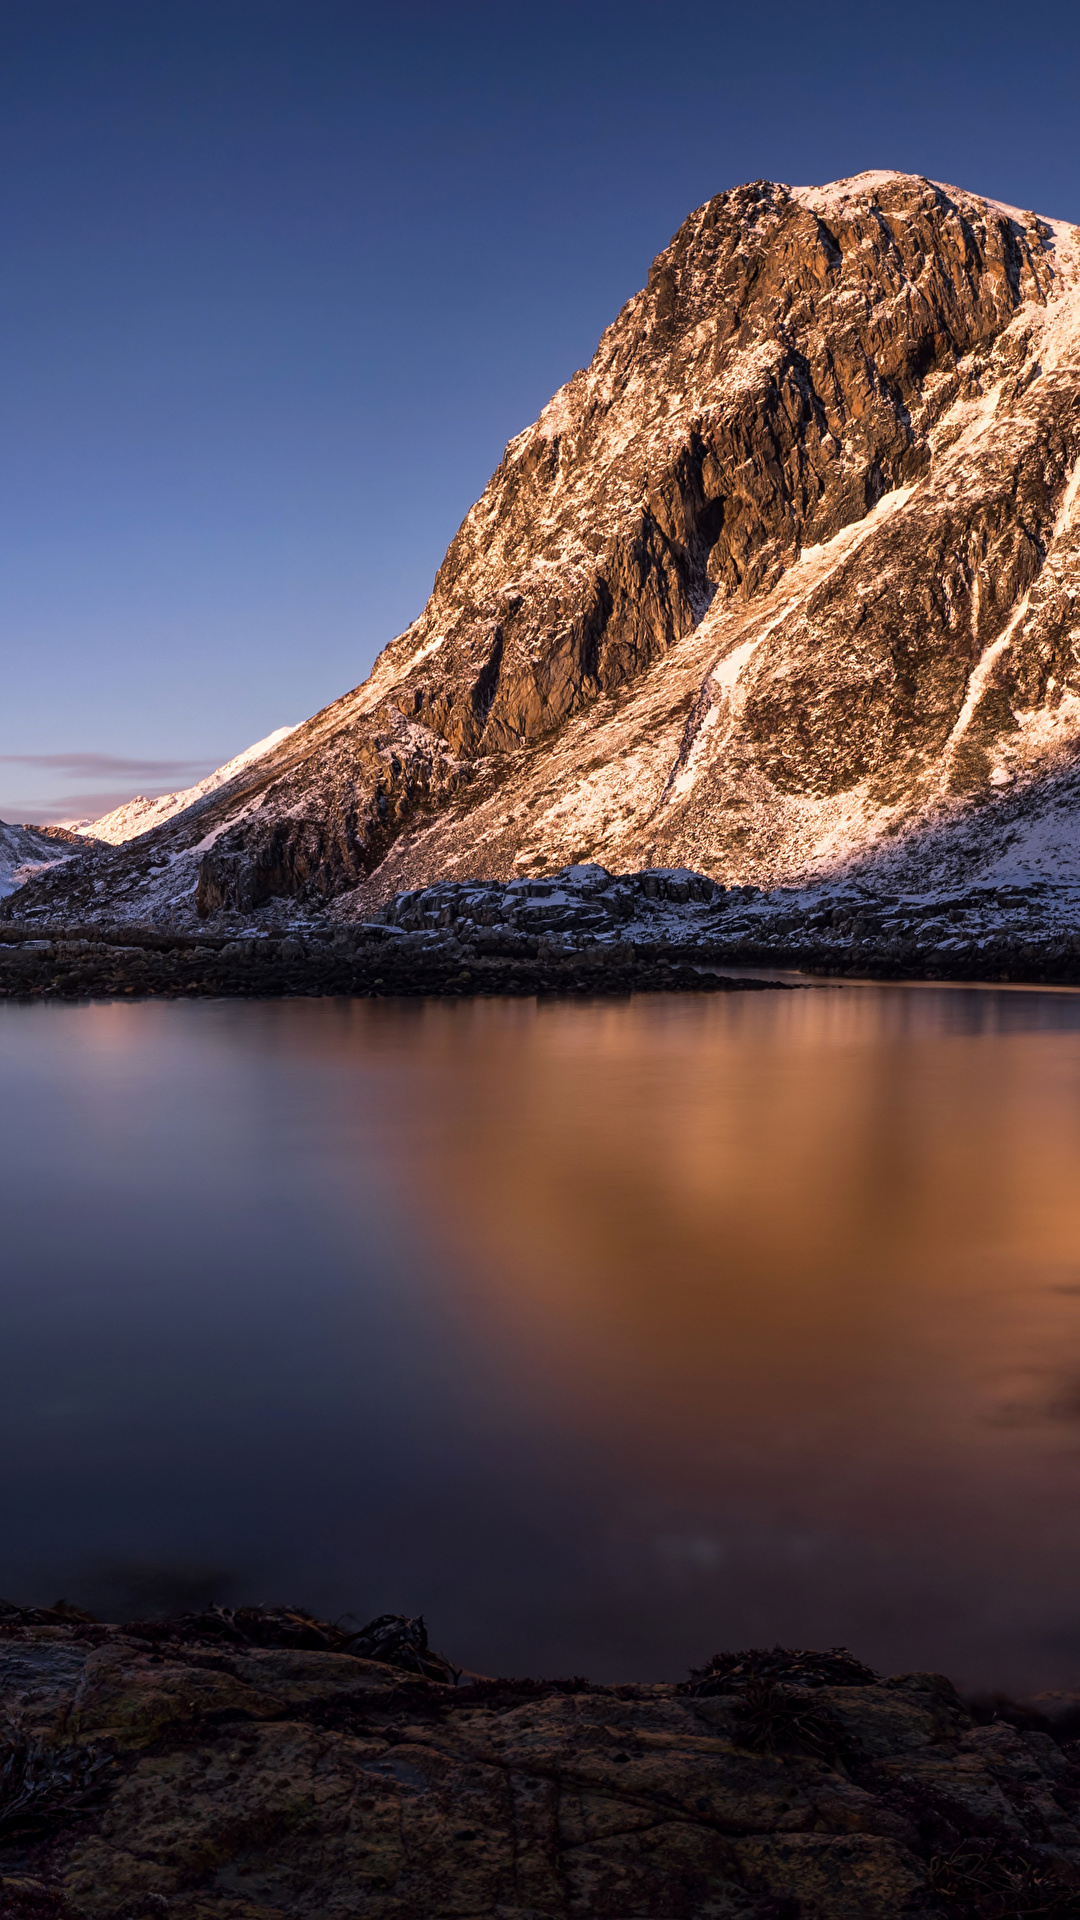 壁紙 1080x1920 ロフォーテン諸島 ノルウェー 風景写真 山 川